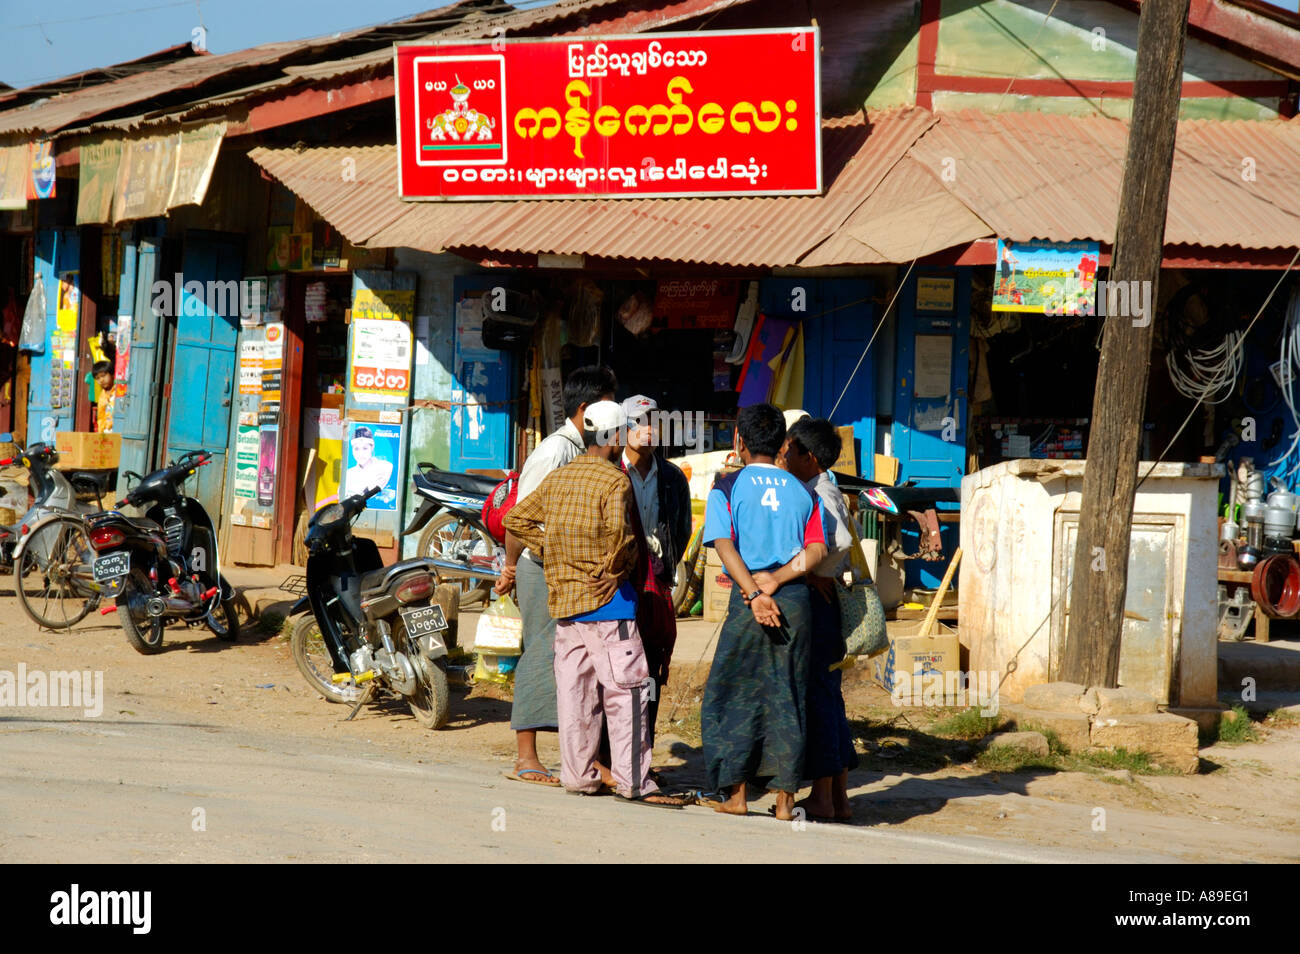 Gruppe von Männern in einem Shop mit Schild im birmanischen Skript Pindaya-Shan-Staat Birma stehen Stockfoto